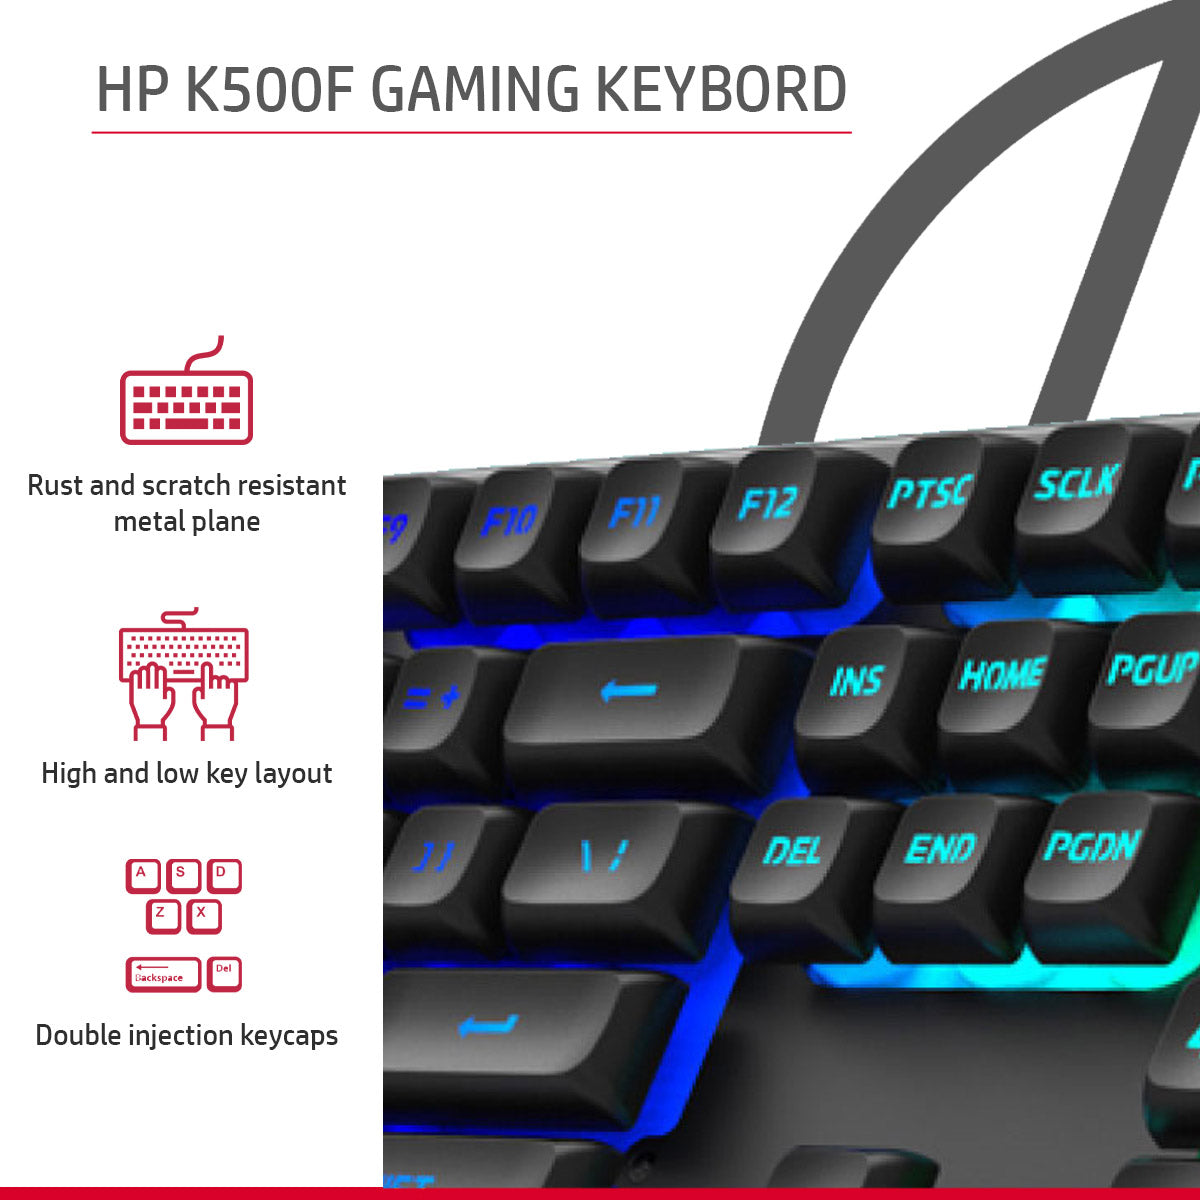 HP KM300F RGB वायर्ड कीबोर्ड और माउस गेमिंग कॉम्बो एडजस्टेबल DPI के साथ